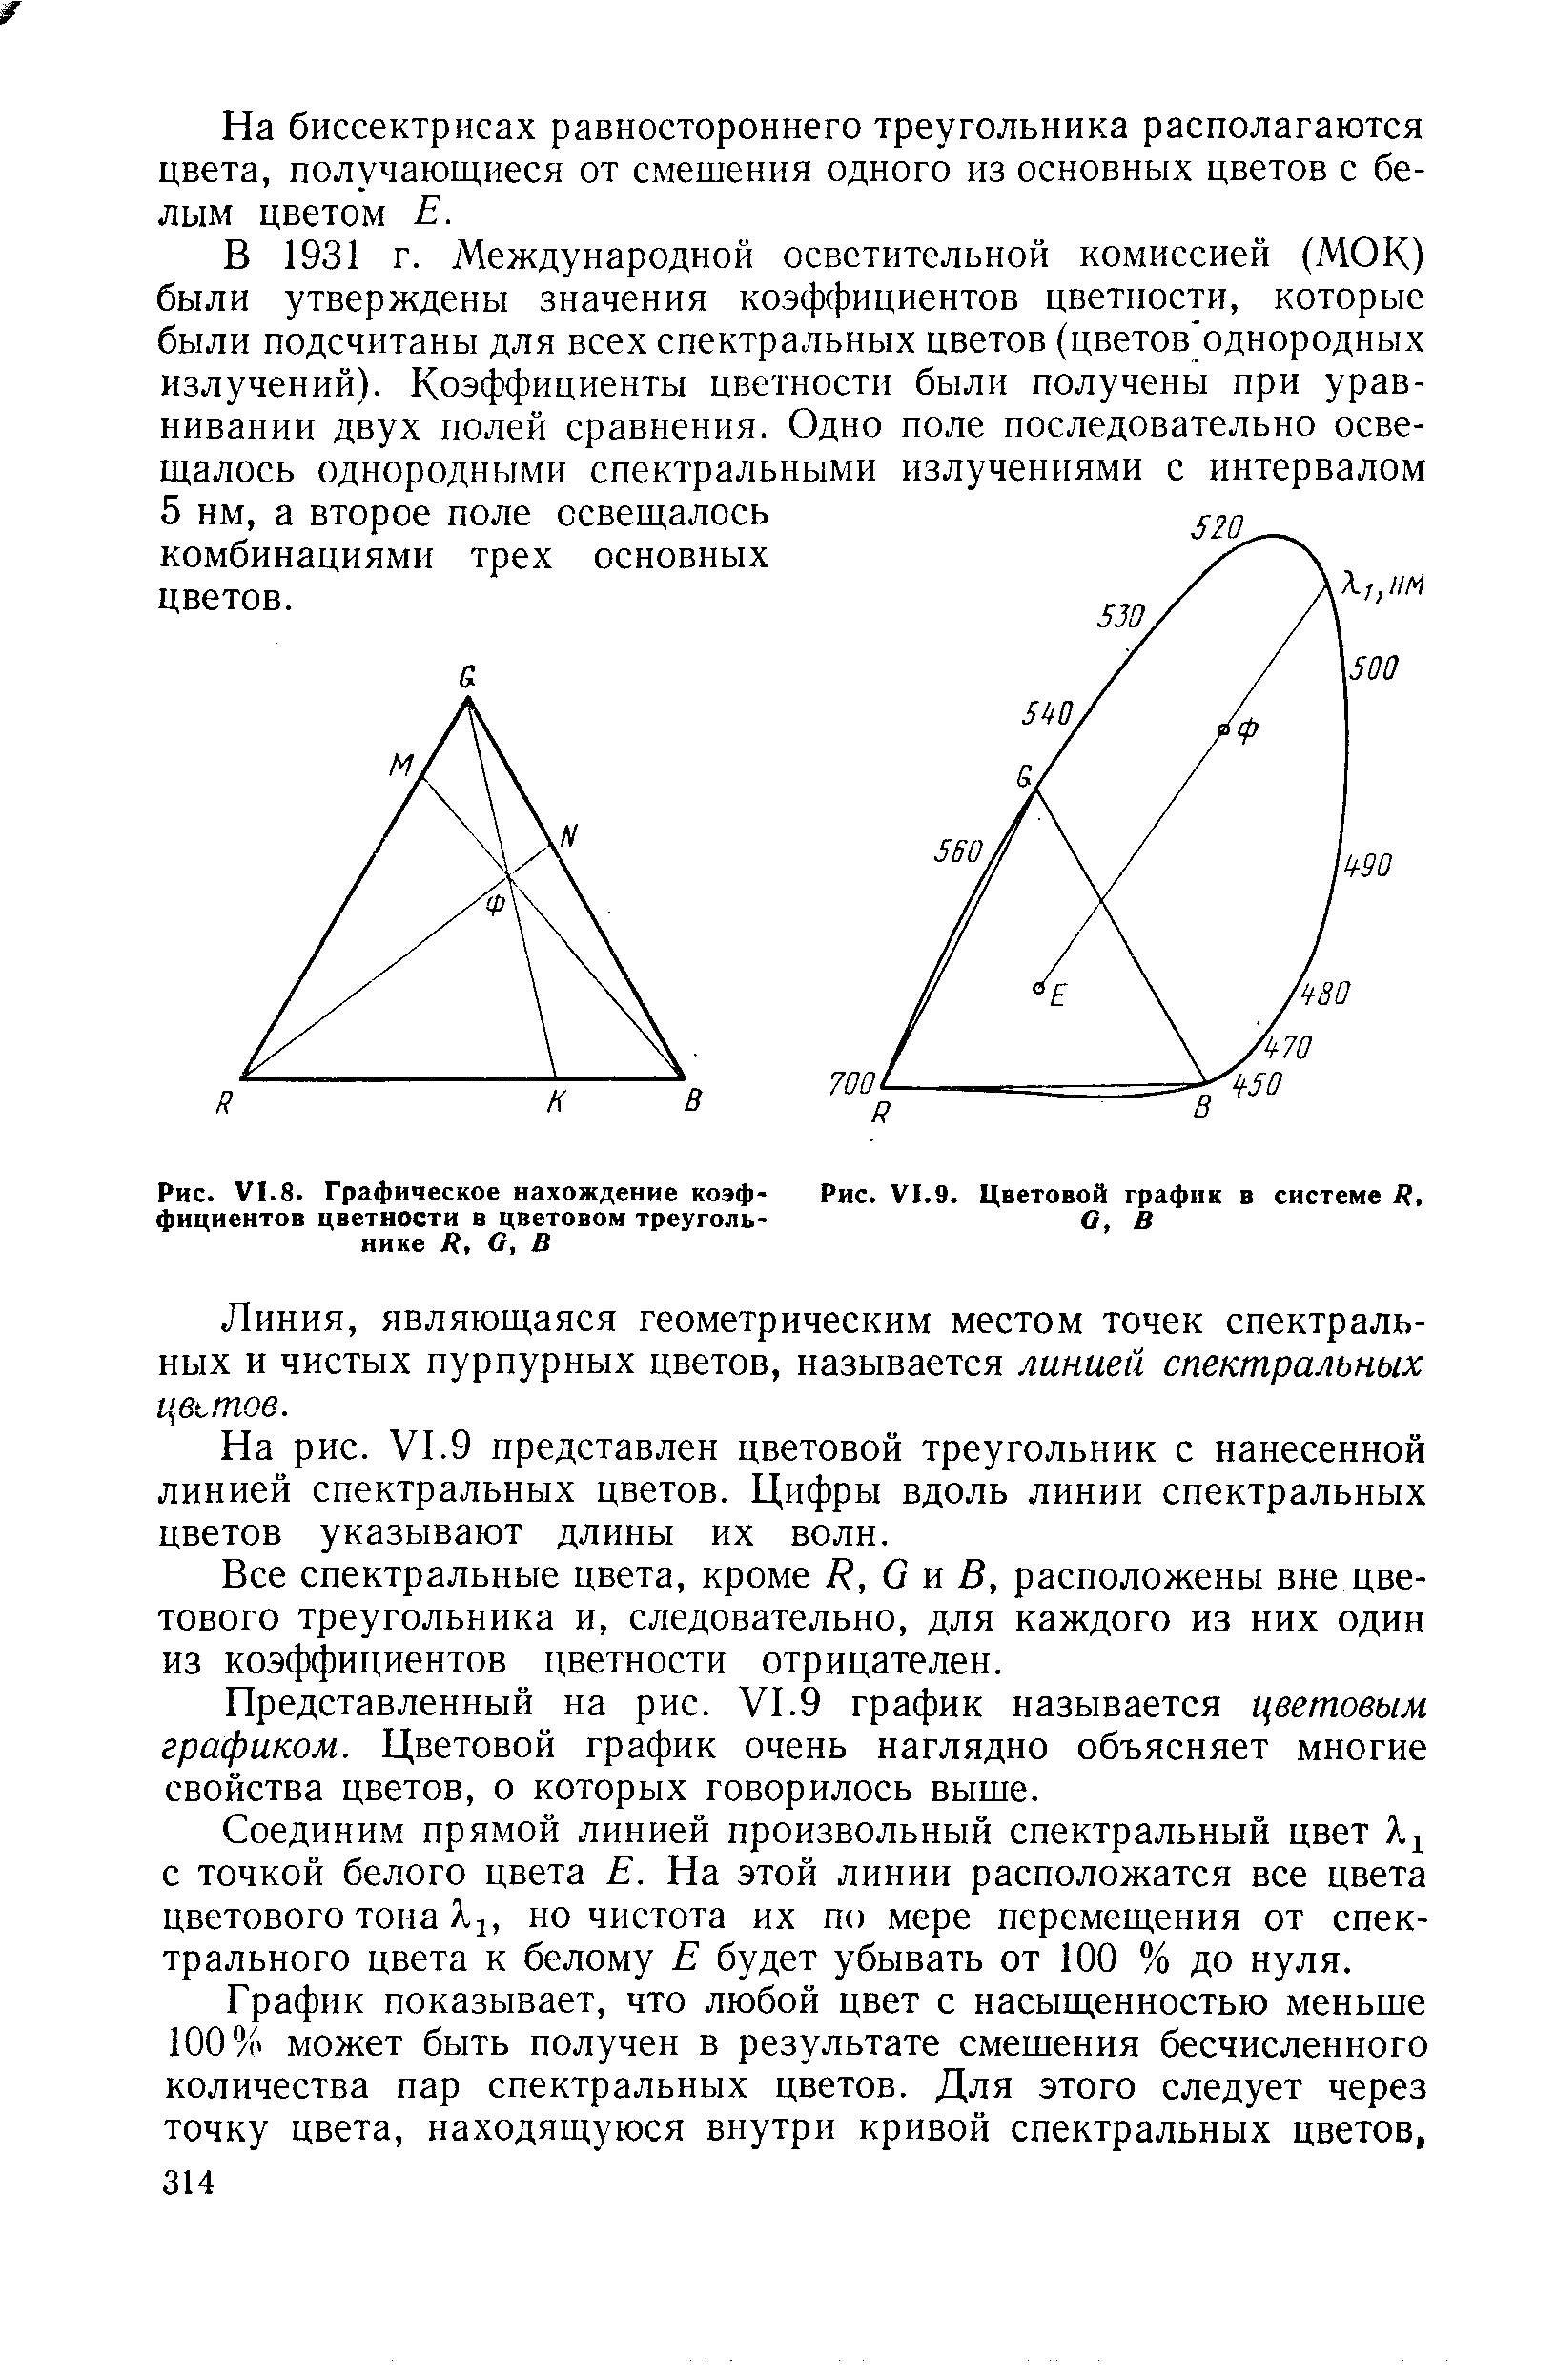 Рис. VI.8. Графическое нахождение коэффициентов цветности в цветовом треугольнике К, а, В
